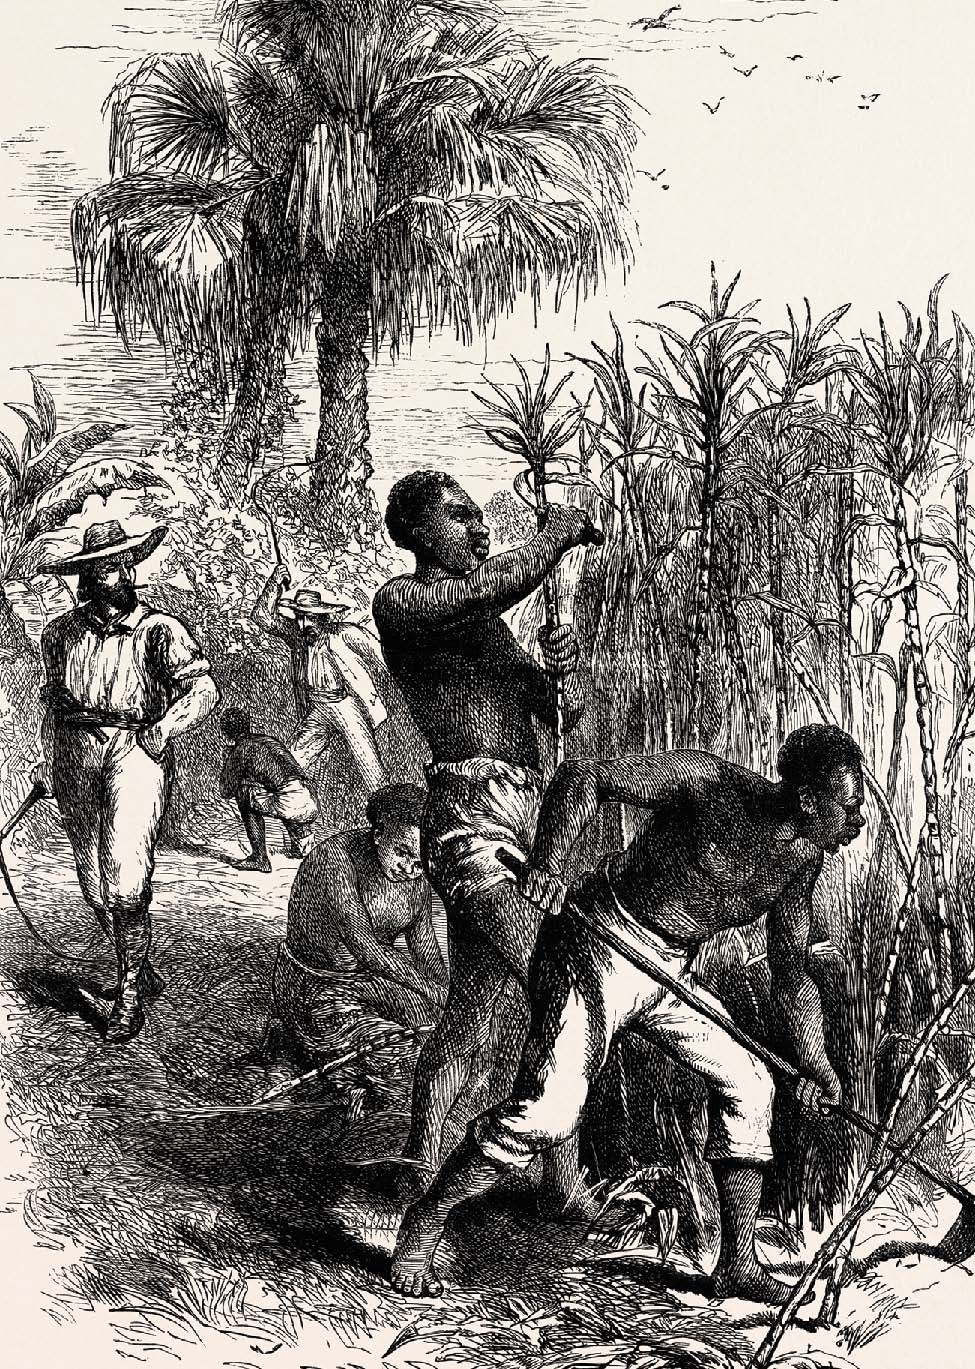 SI QUIERES SABER MÁS Algunos delegados del Norte querían prohibir la esclavitud - photo 7